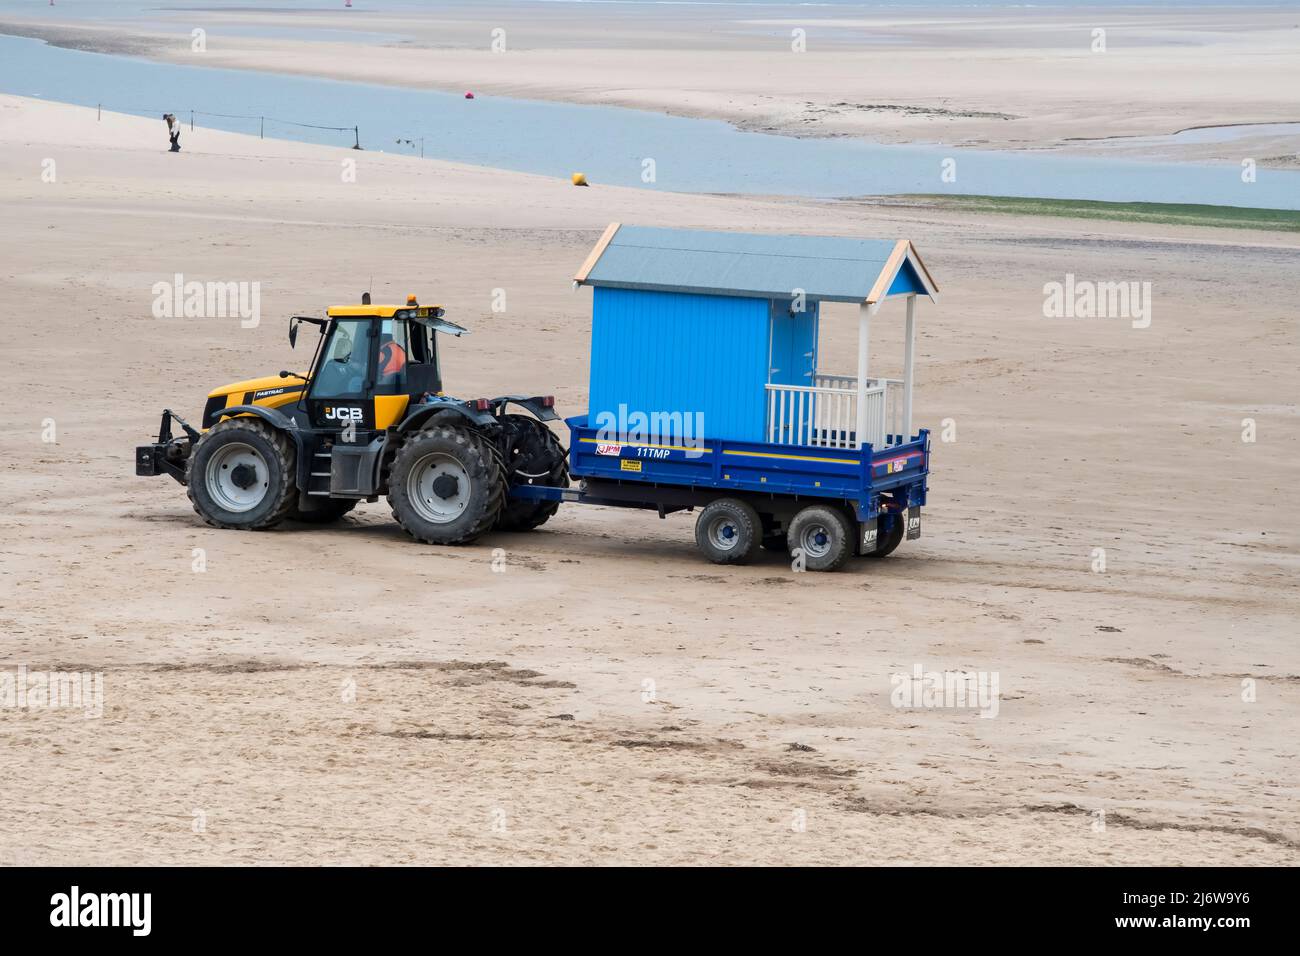 Une nouvelle hutte de plage est livrée par tracteur pour installation sur la plage de Wells-Next-the-Sea, dans le nord de Norfolk. Banque D'Images